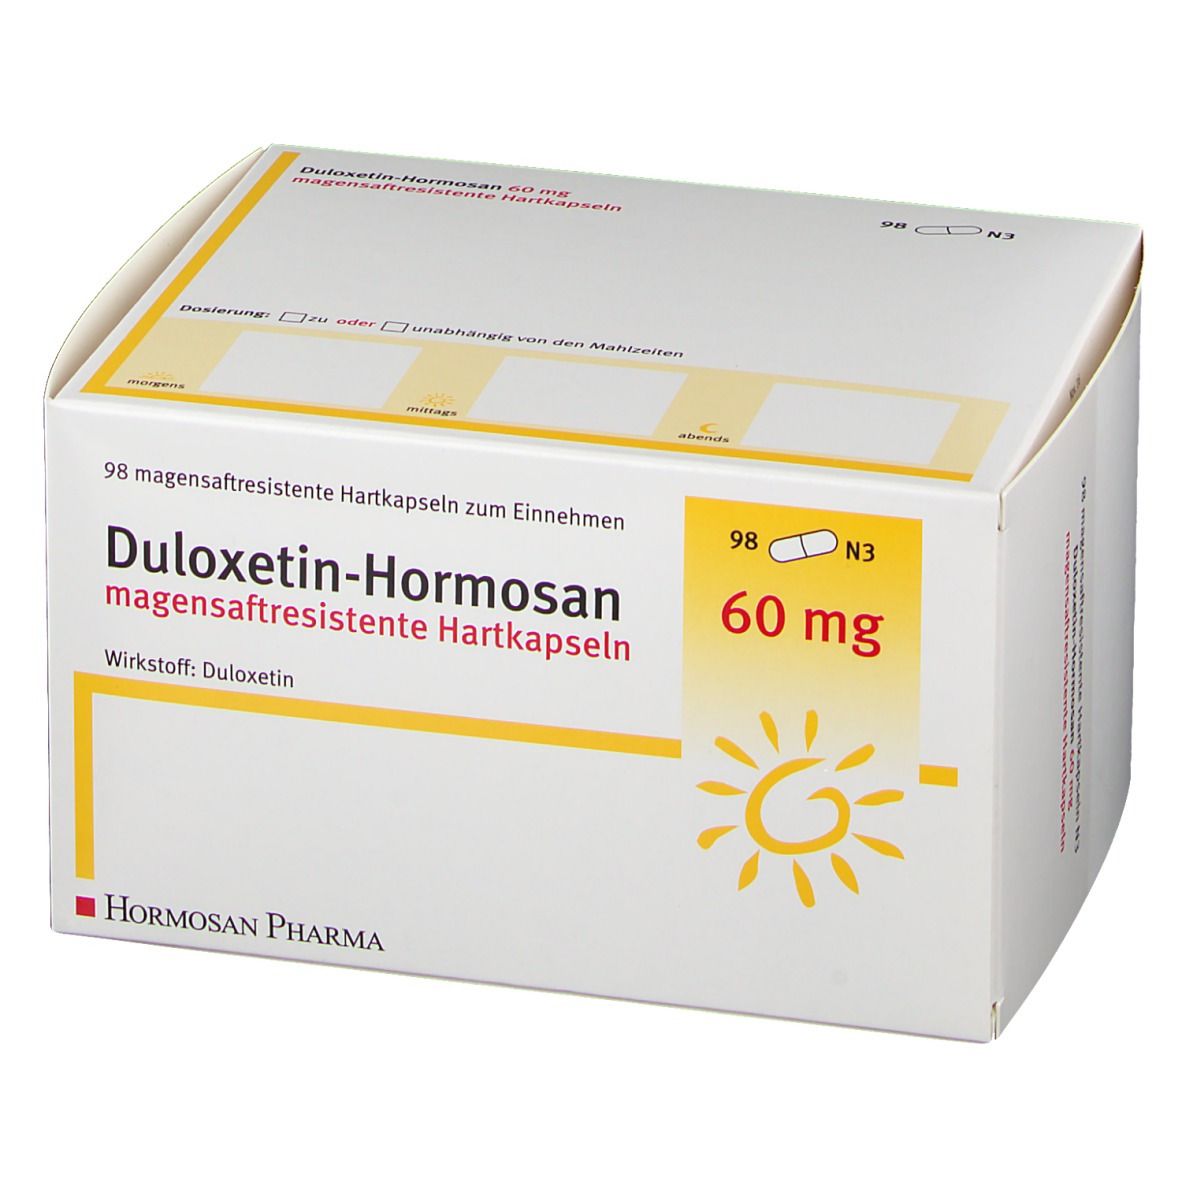 Duloxetin-Hormosan 60 mg